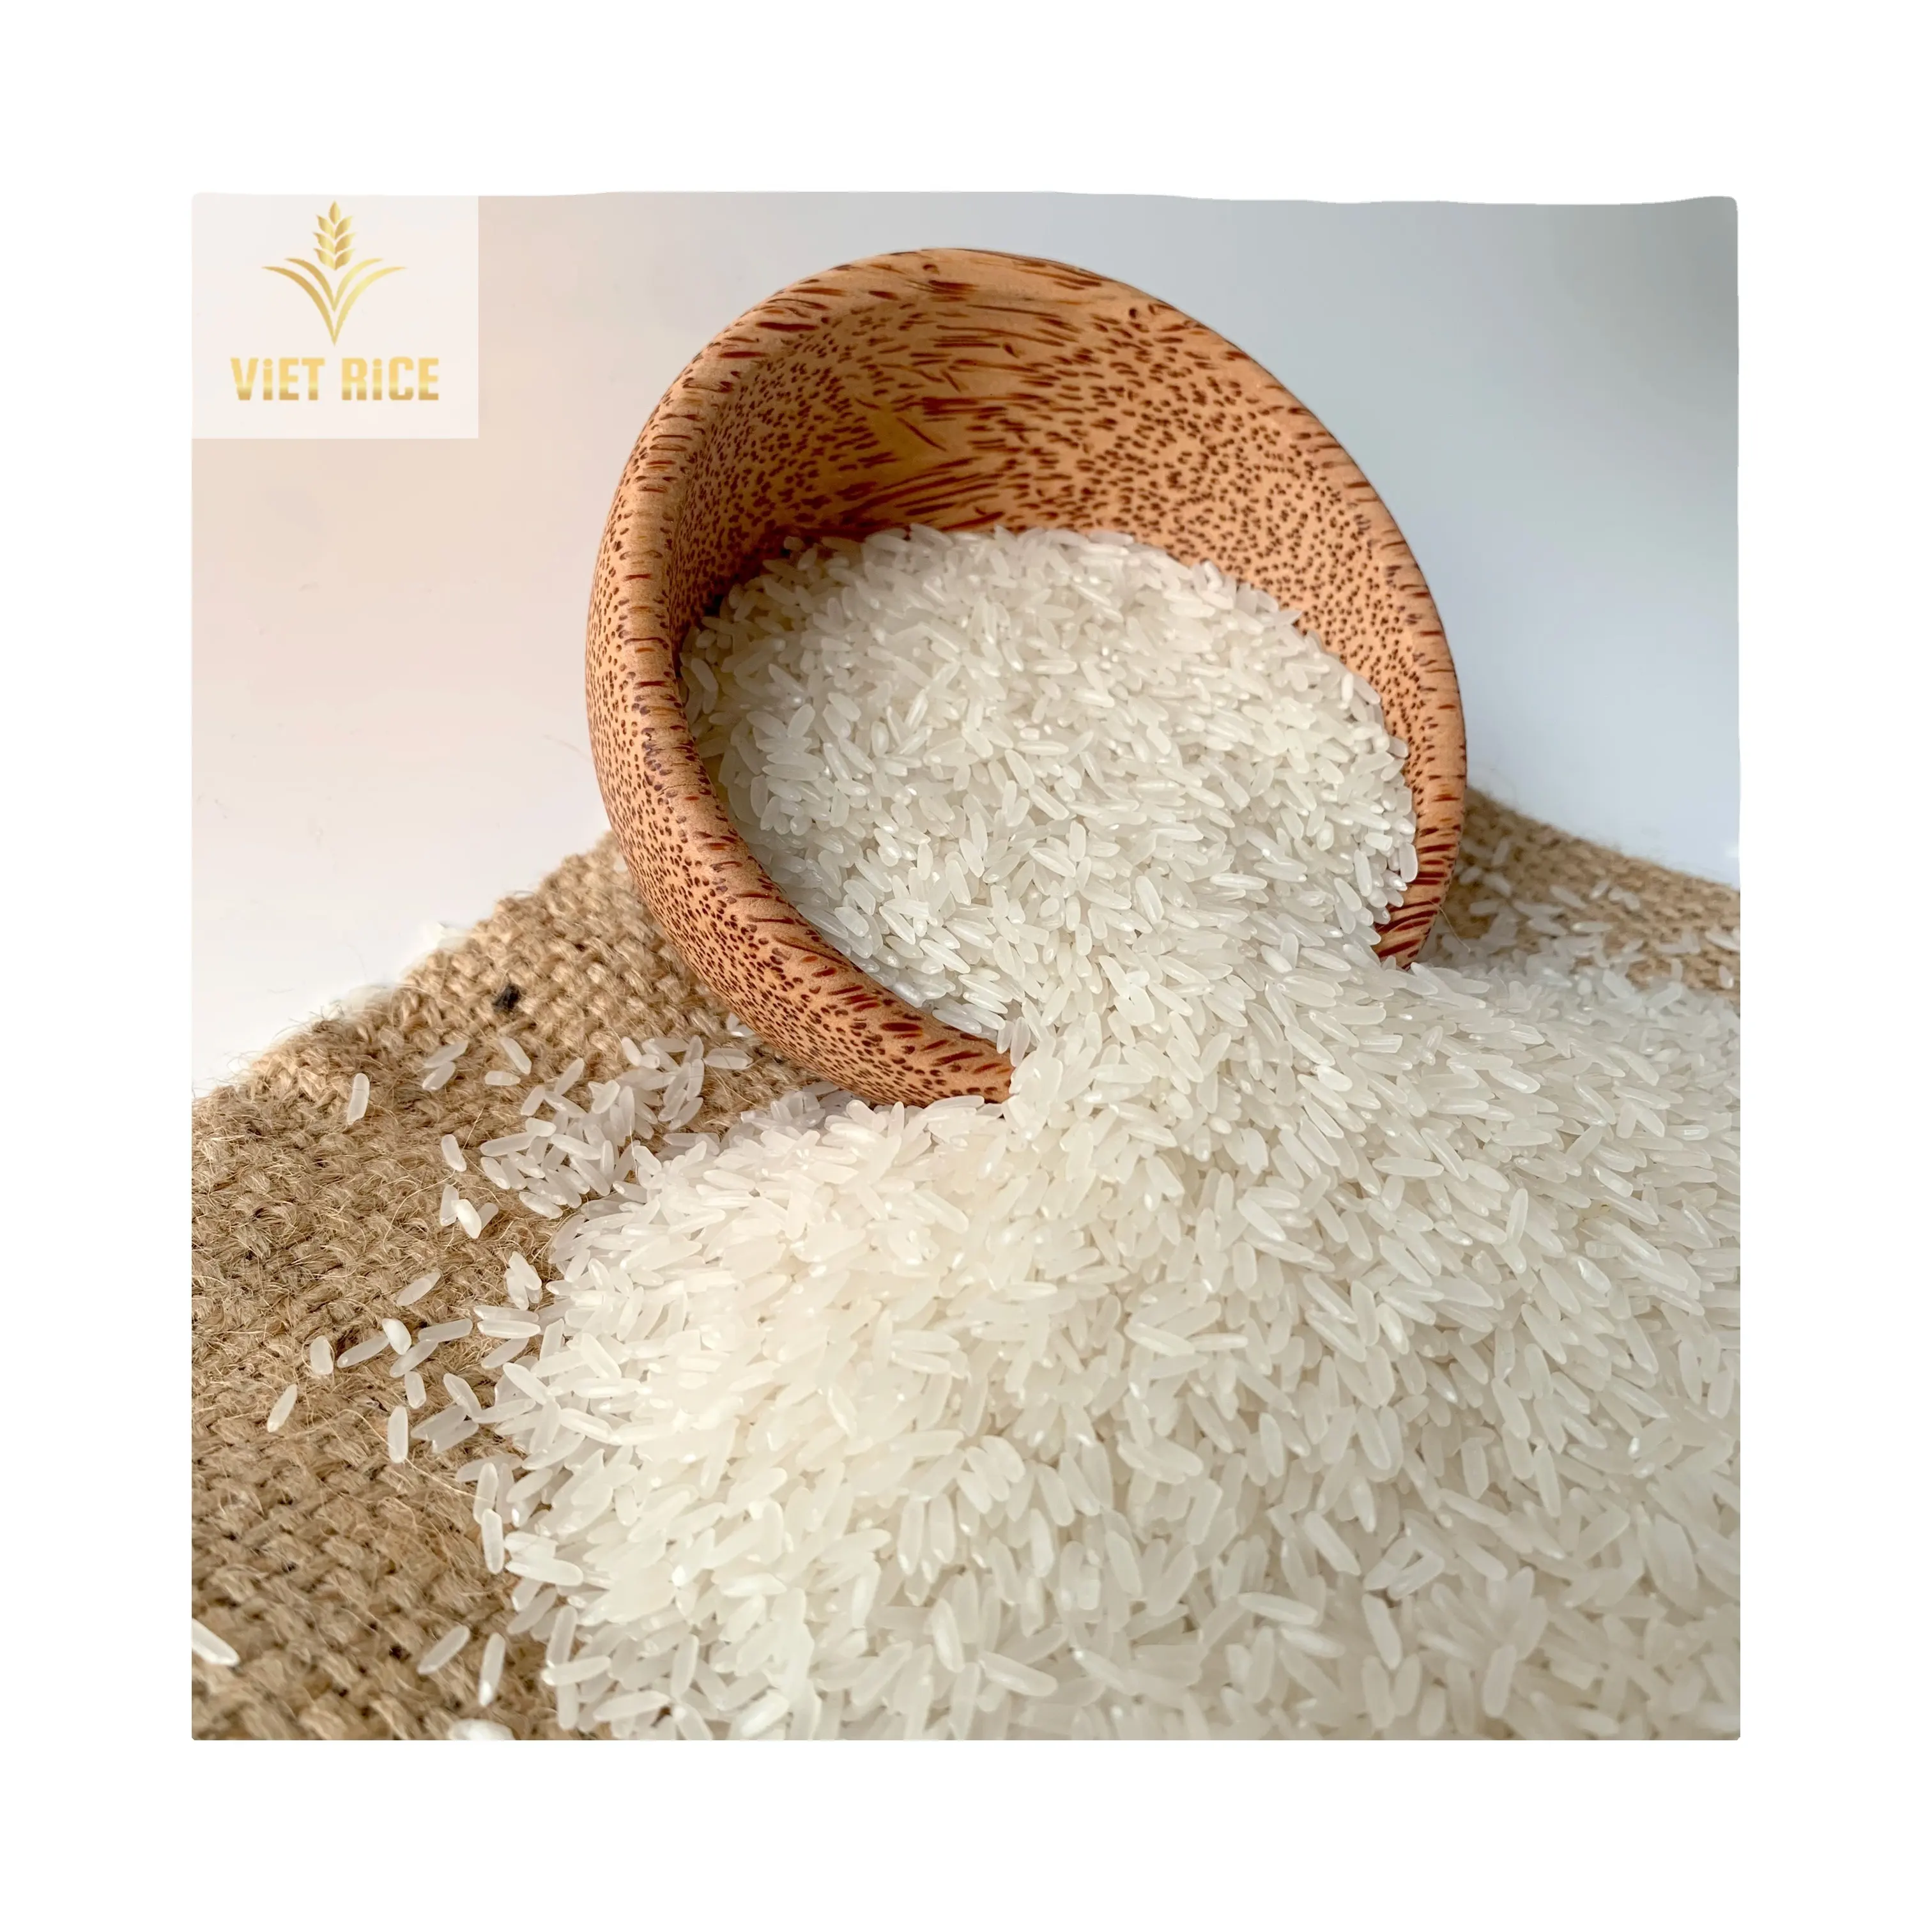 Gạo lài 5% thơm vỡ cần mua gạo với số lượng lớn xin vui lòng liên hệ trực tiếp để nhận báo giá tốt nhất